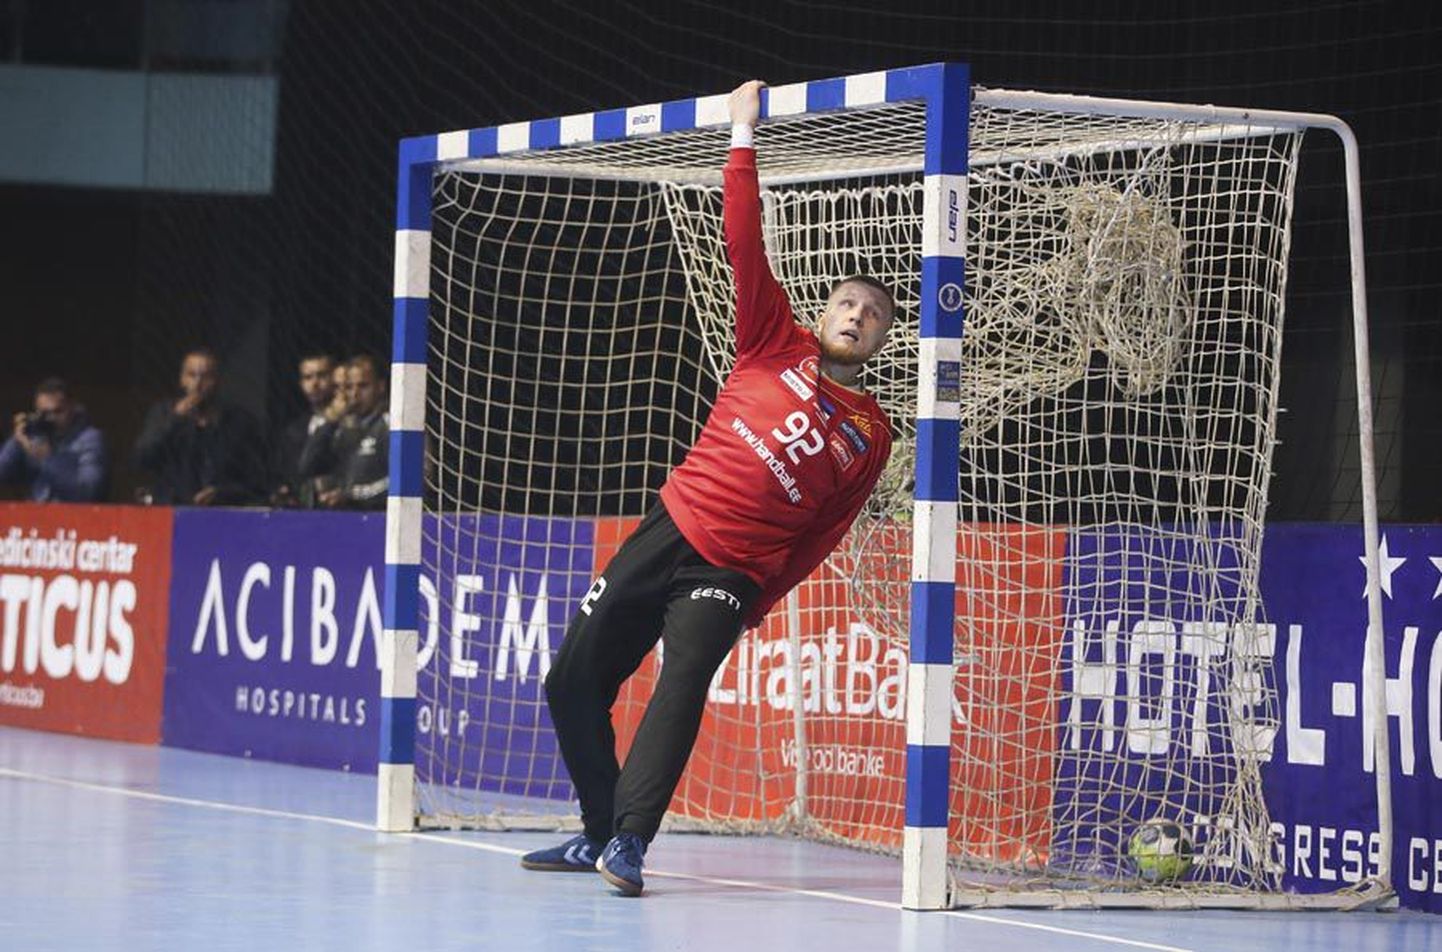 Viljandi käsipallimeeskonna väravavaht Rasmus Ots tegi laupäeval Eesti koondise vormis hiilgava mängu.